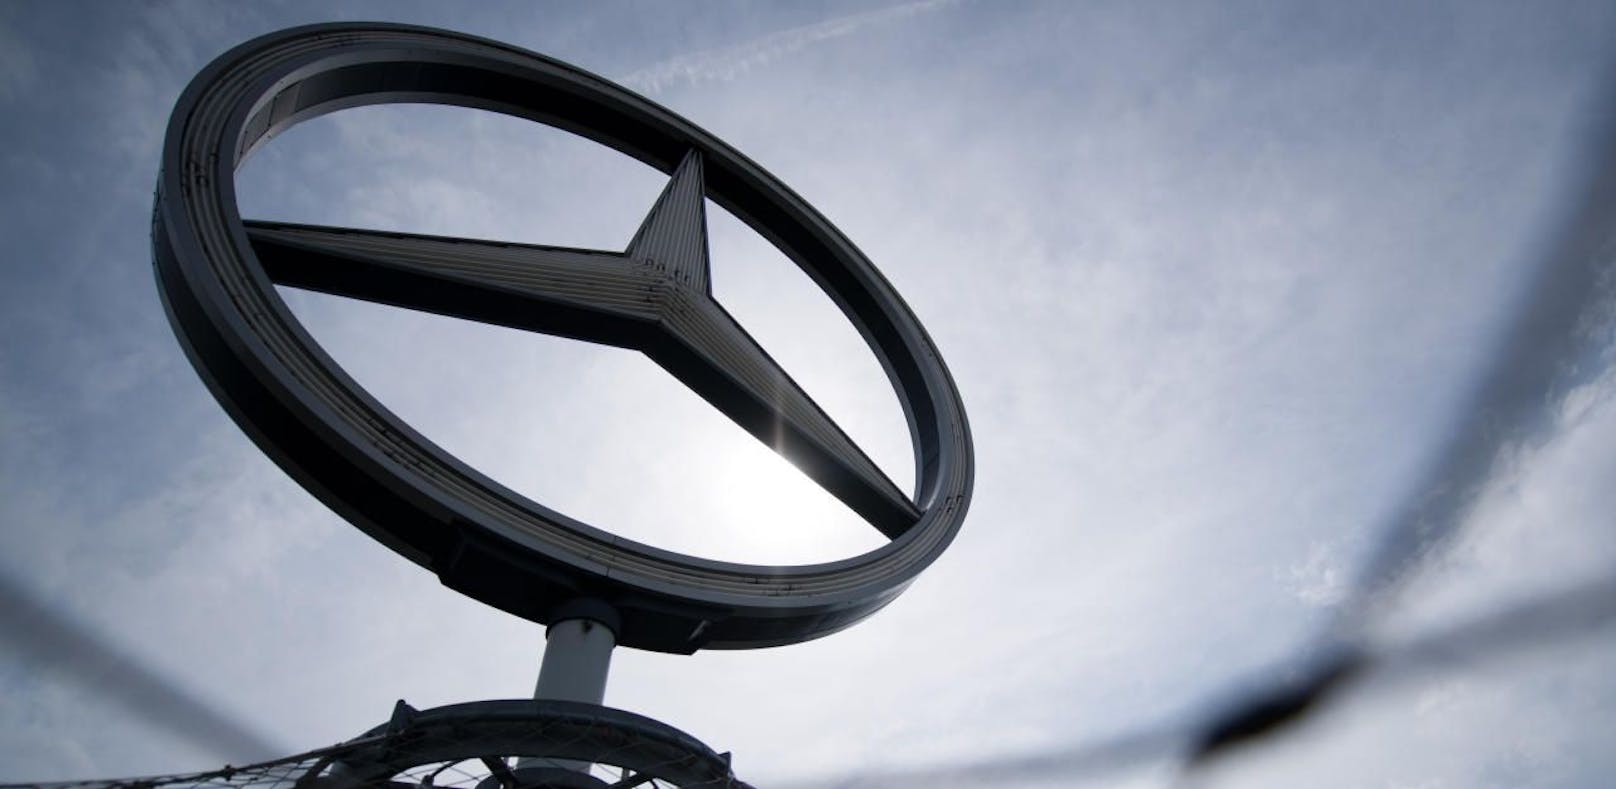 Diesel-Skandal: Daimler muss 870 Mio. Euro zahlen